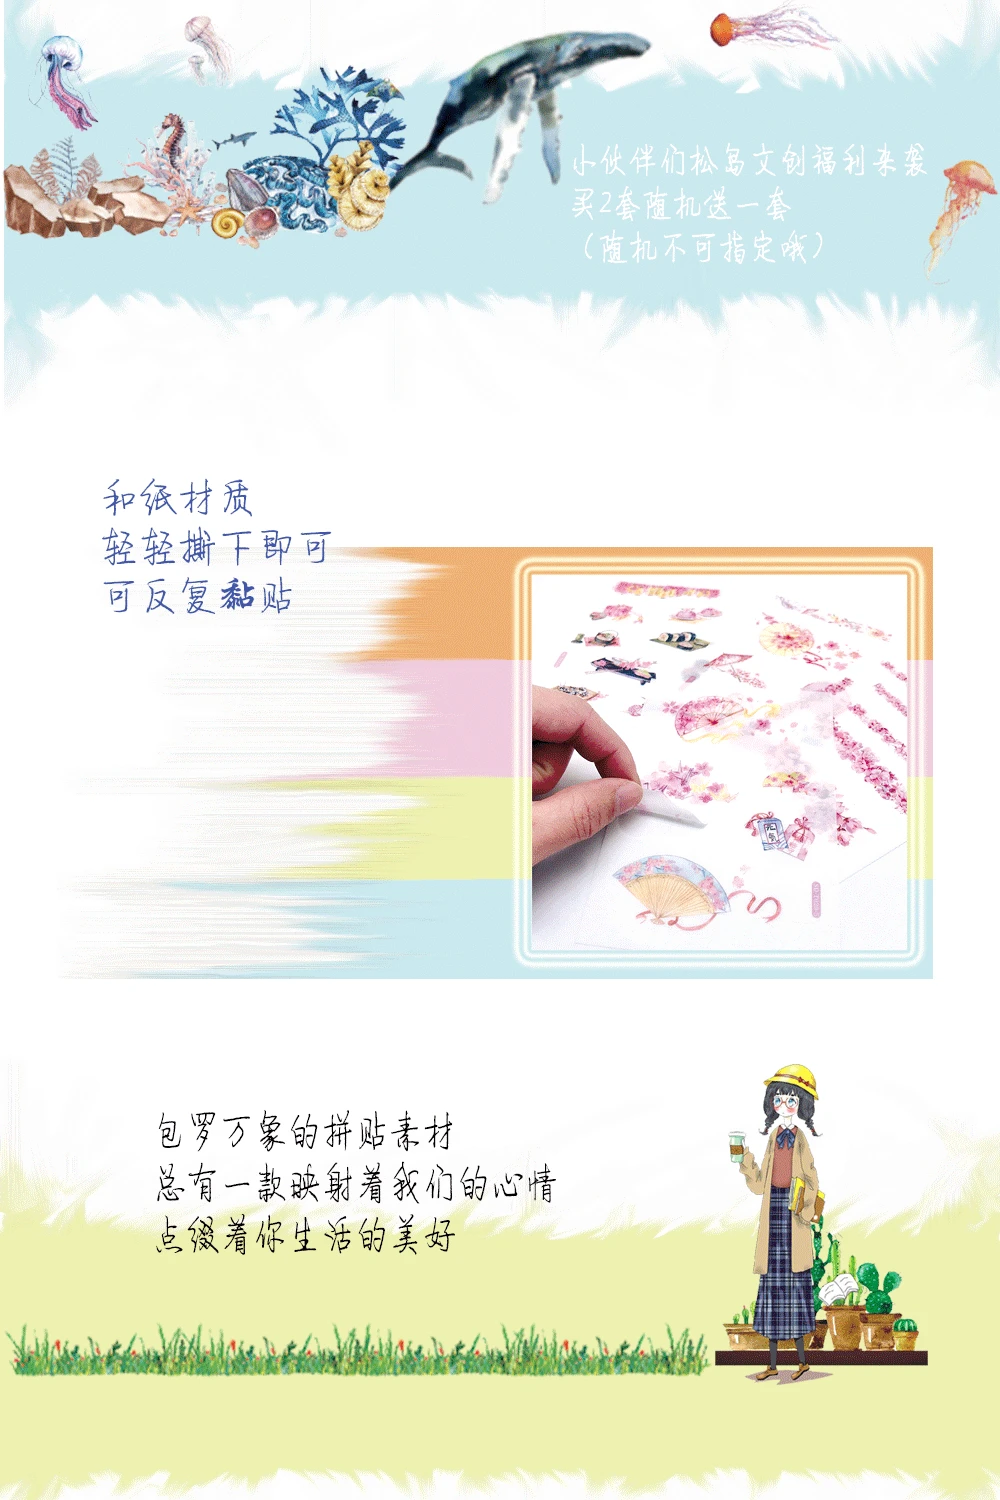 (6 листов/партия) мультфильм аниме наклейка альбом декоративная наклейка-стикер для дневника студента DIY Скрапбукинг стикер